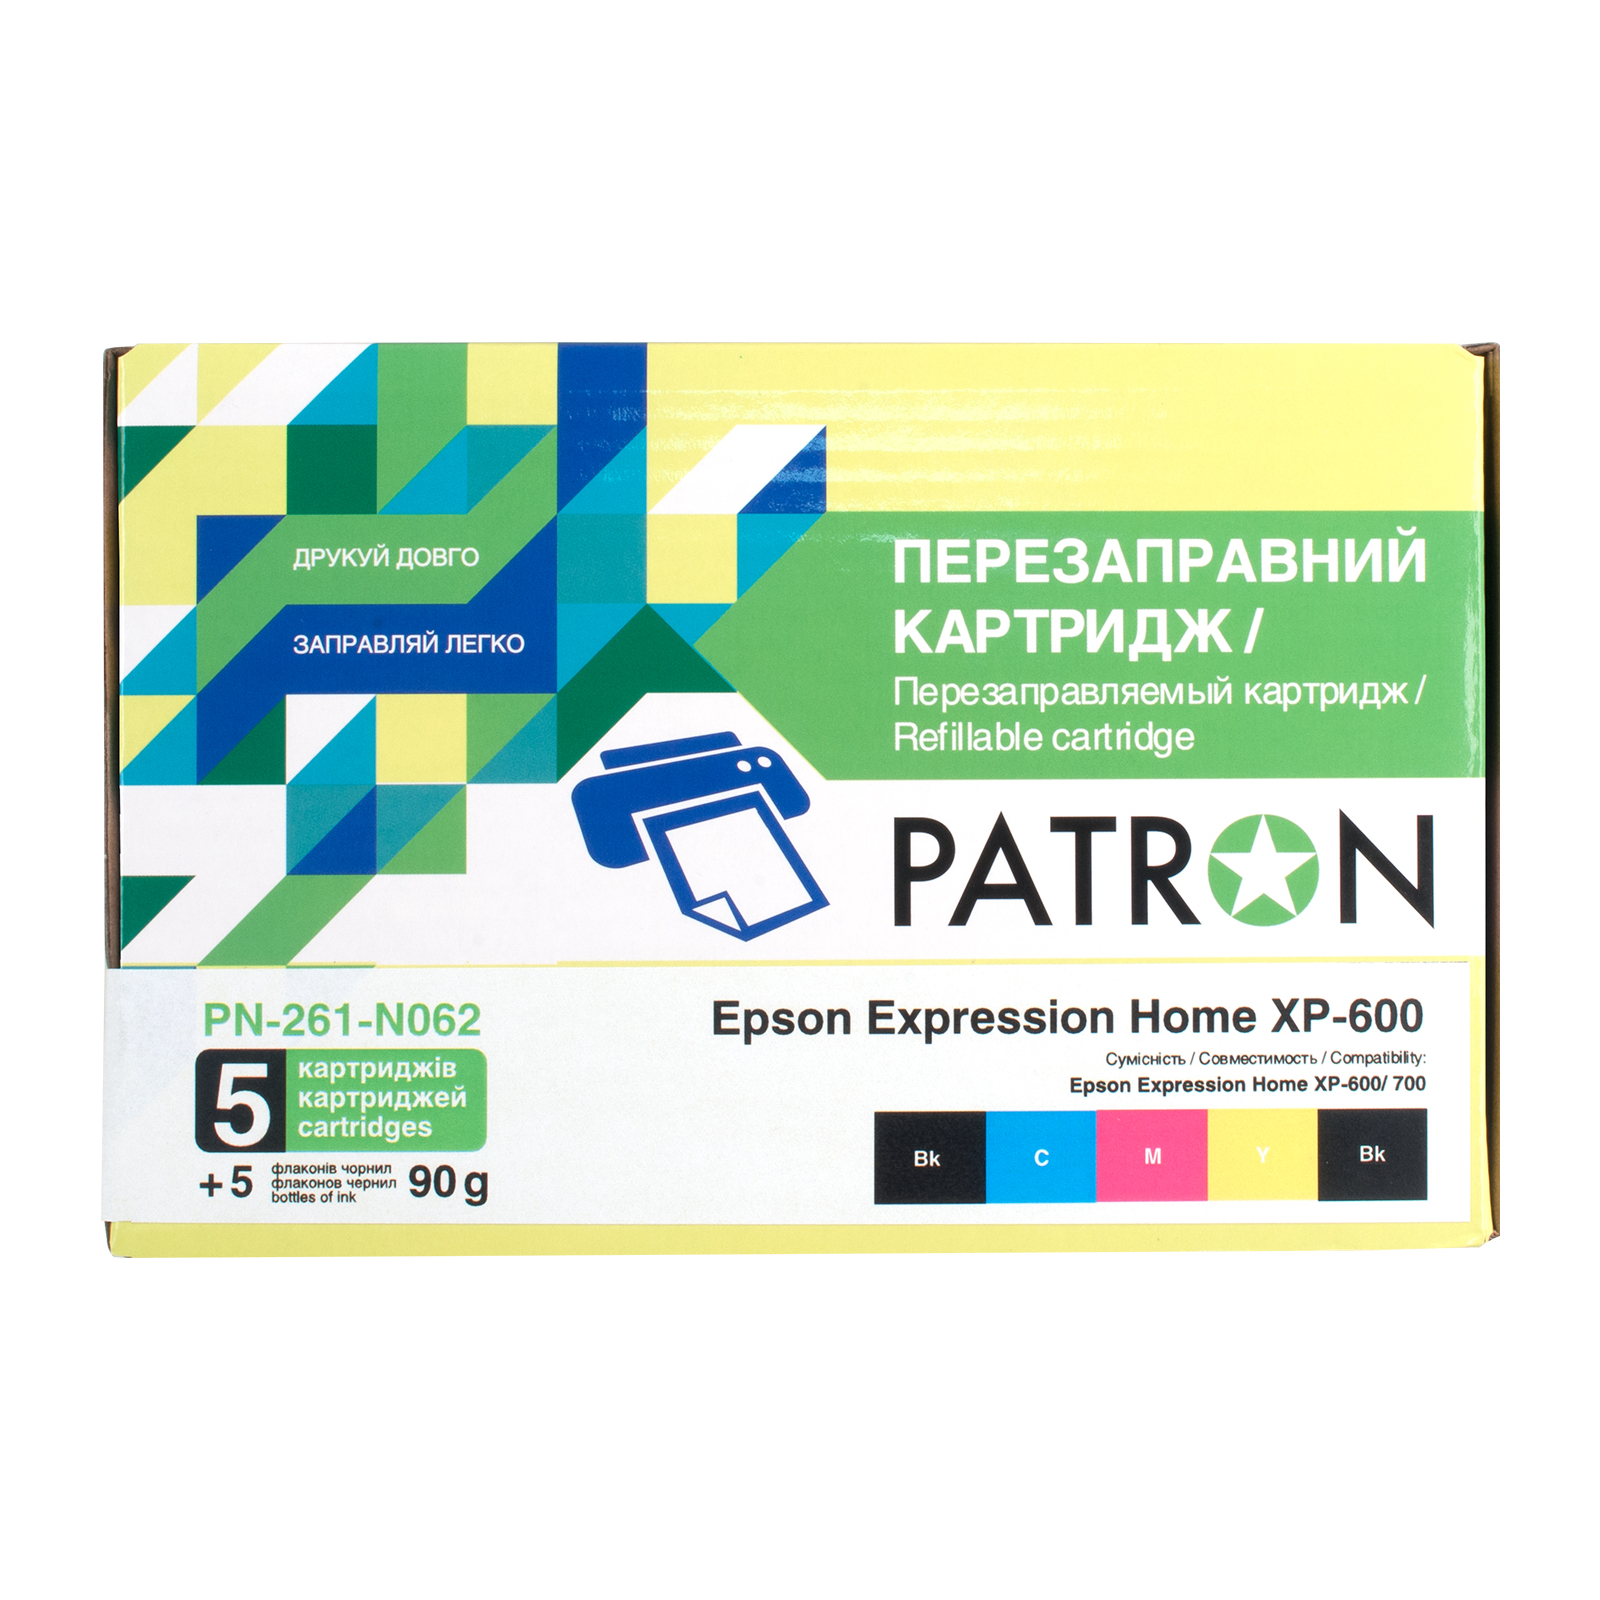 Комплект перезаправляемых картриджей Patron Epson XP-600/ 700/ 800 (PN-261-N062) изображение 2